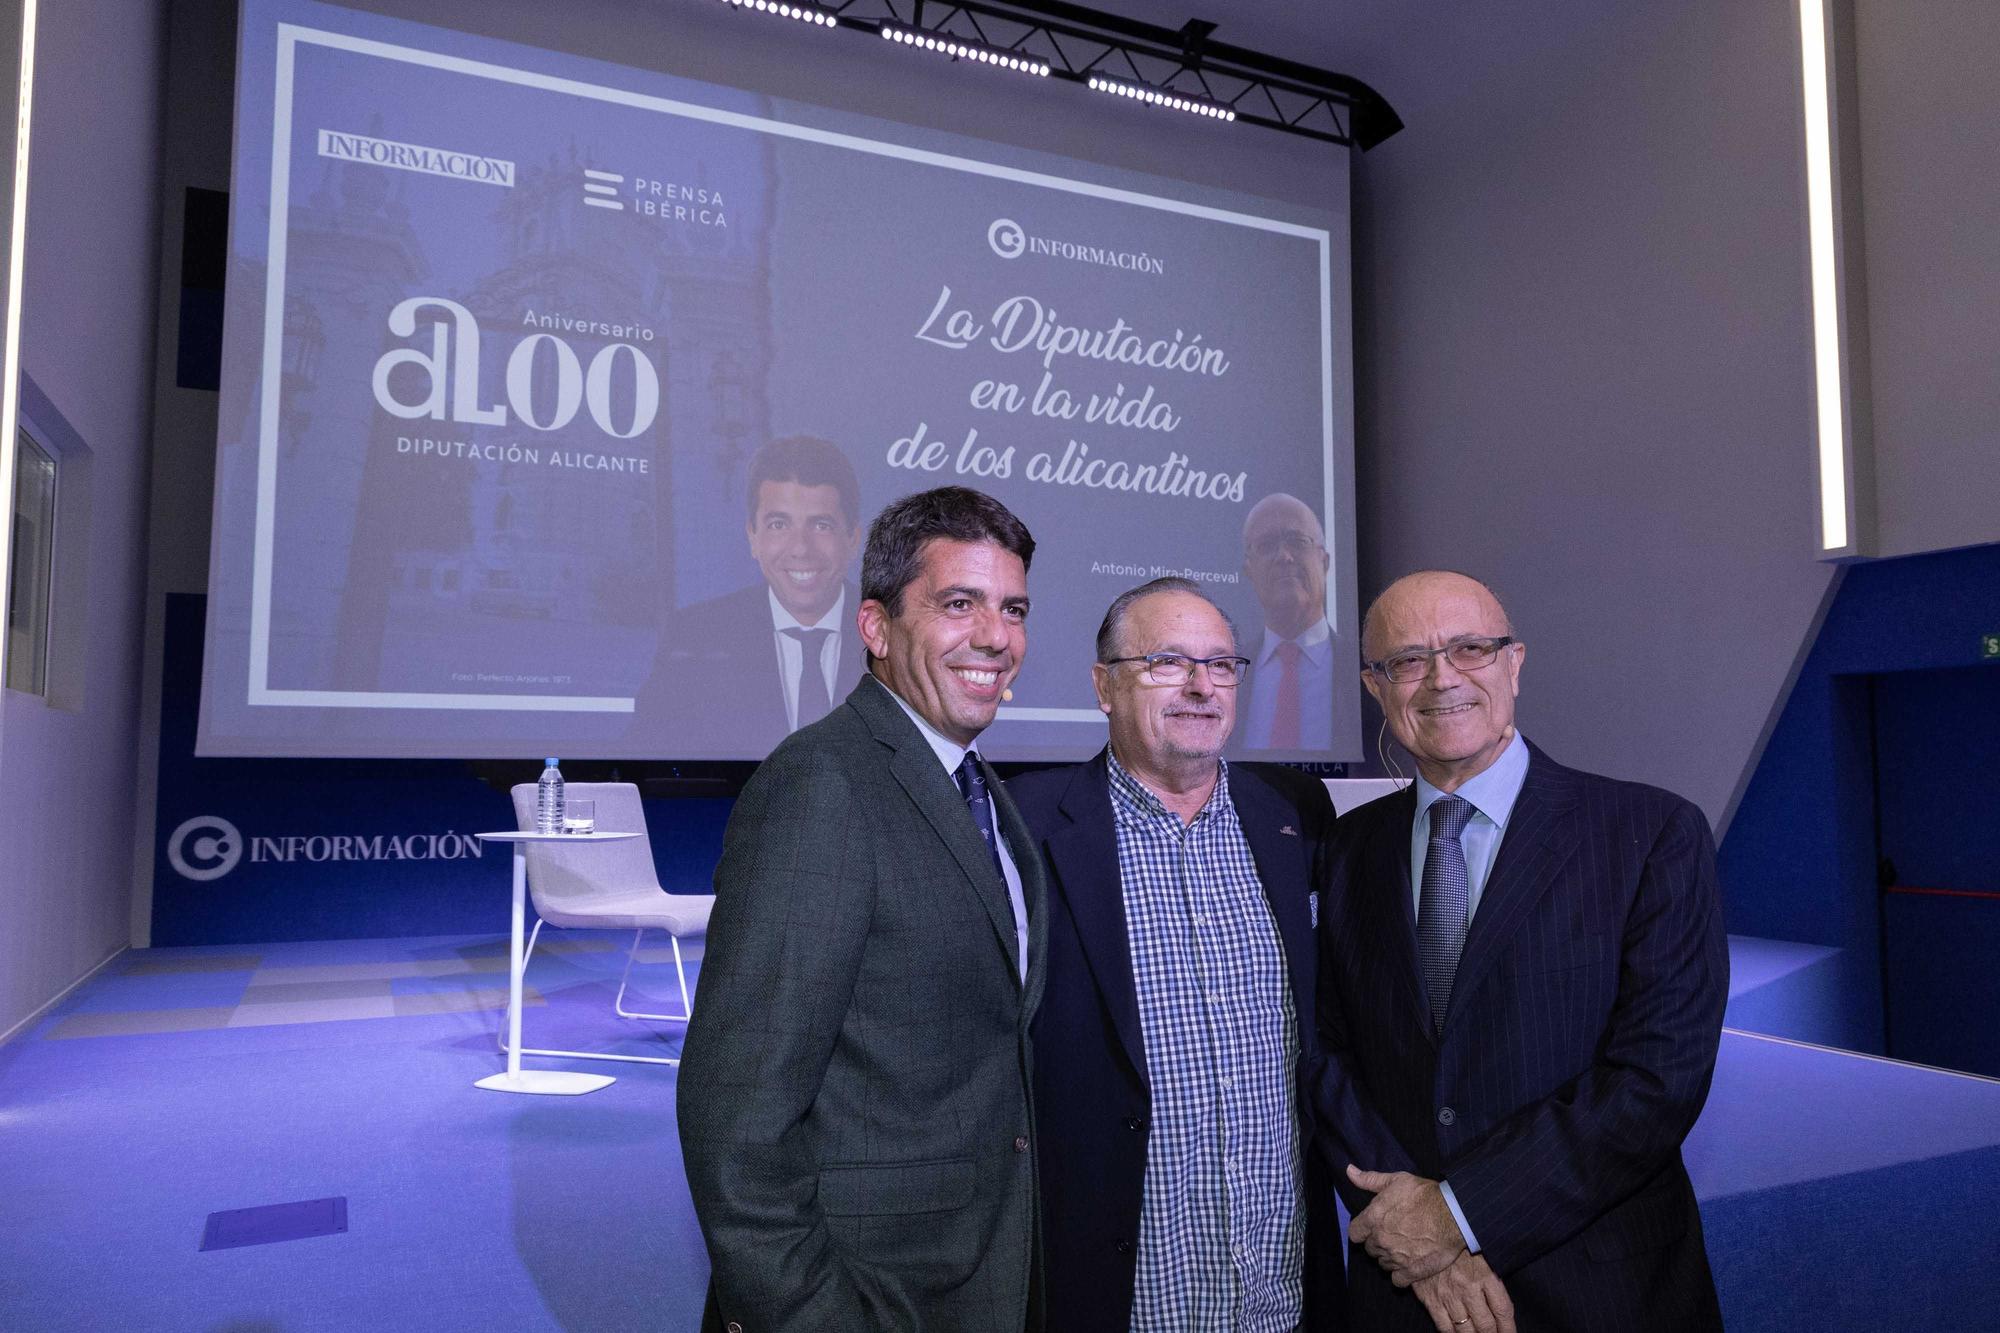 Mazón y Mira-Perceval reabren el Club INFORMACIÓN con motivo del 200 aniversario de la Diputación